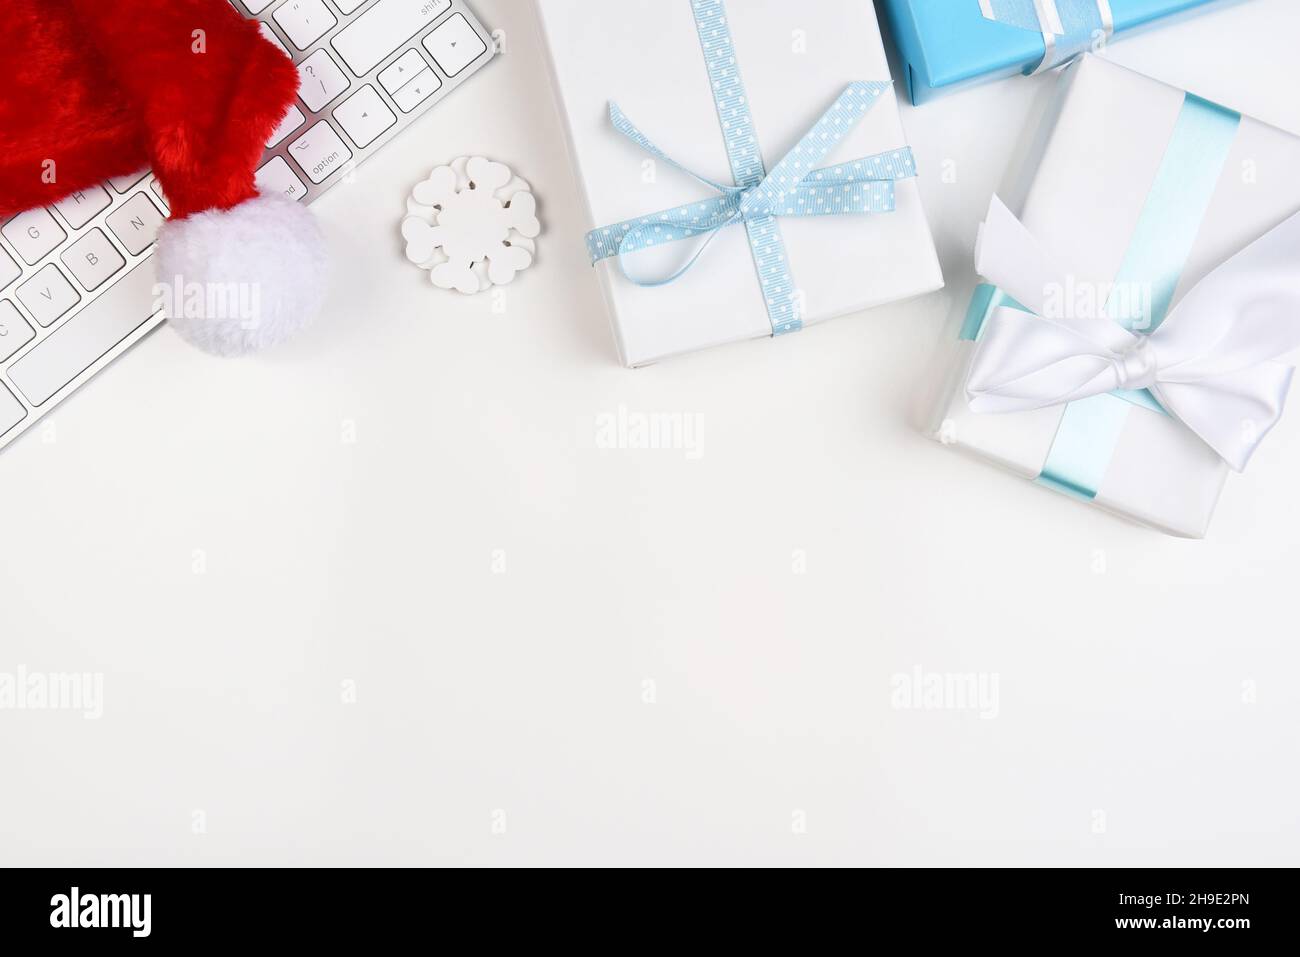 Concept de Noël à plat.Un clavier d'ordinateur, Santa Hat et papier blanc et bleu enveloppé présente avec un espace de copie dans la moitié inférieure de l'image. Banque D'Images